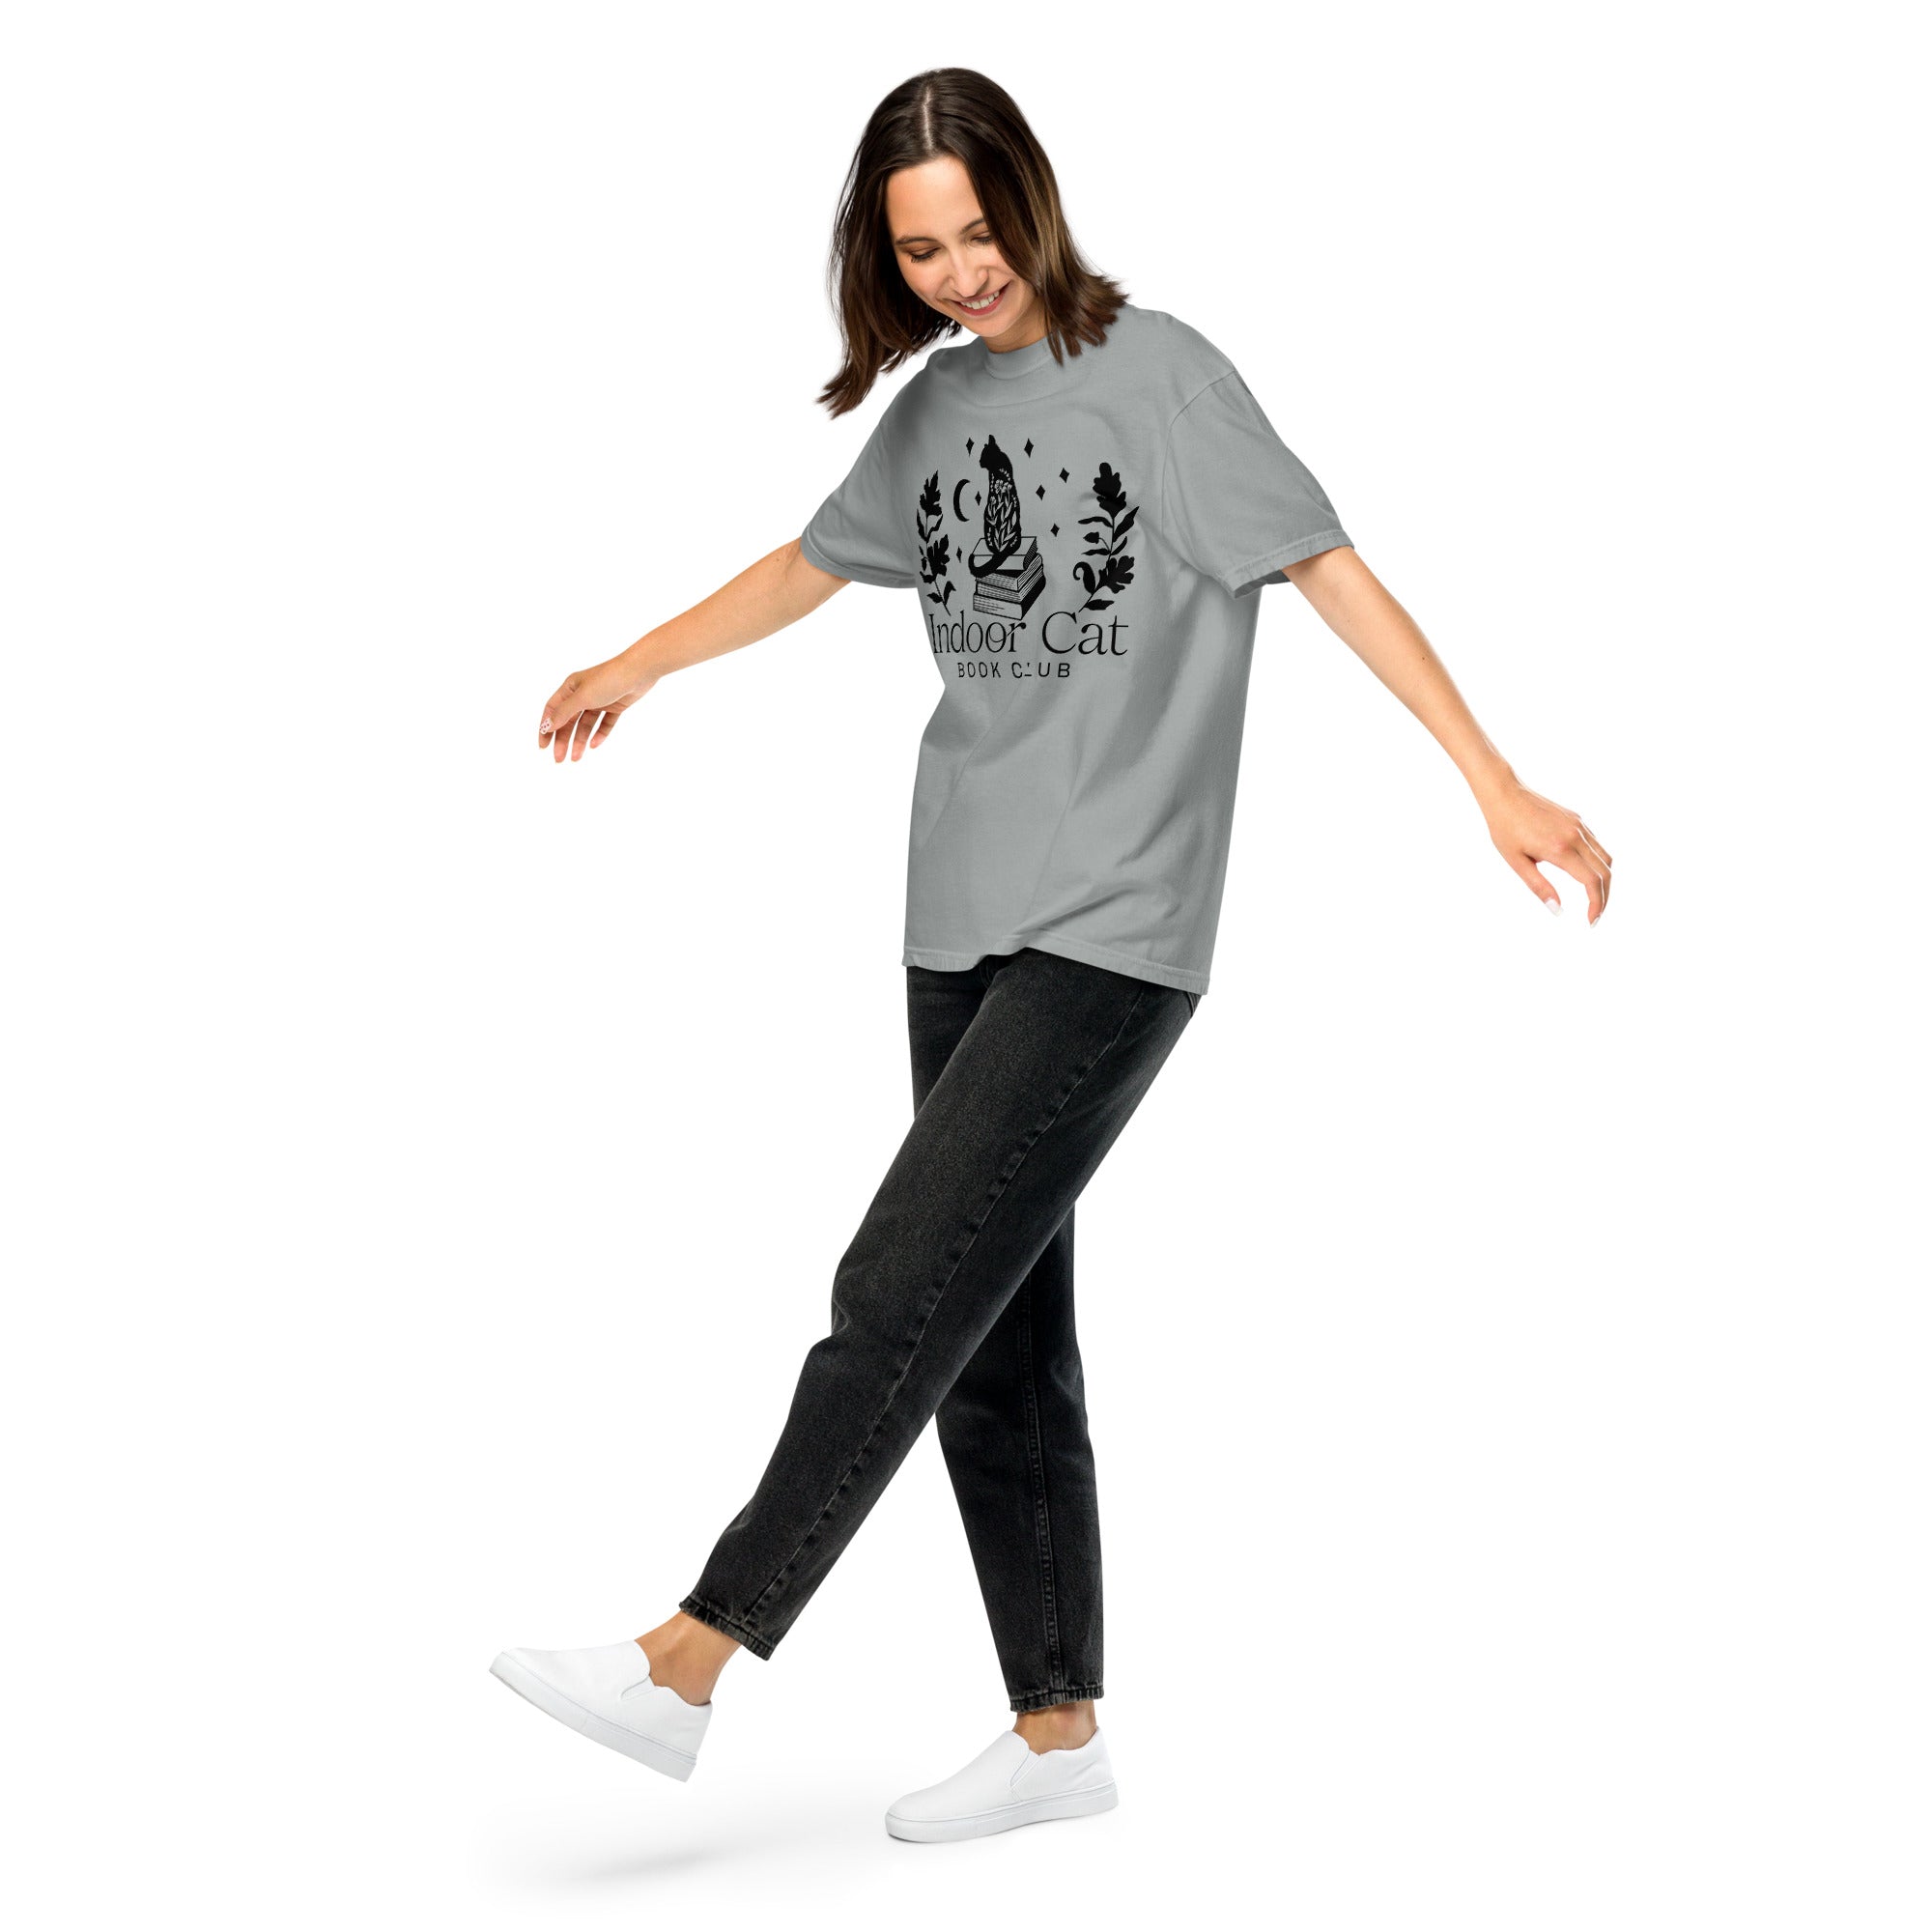 FireDrake Artistry™ Indoor Cat t-shirt, comfort colors brand in granite, black design